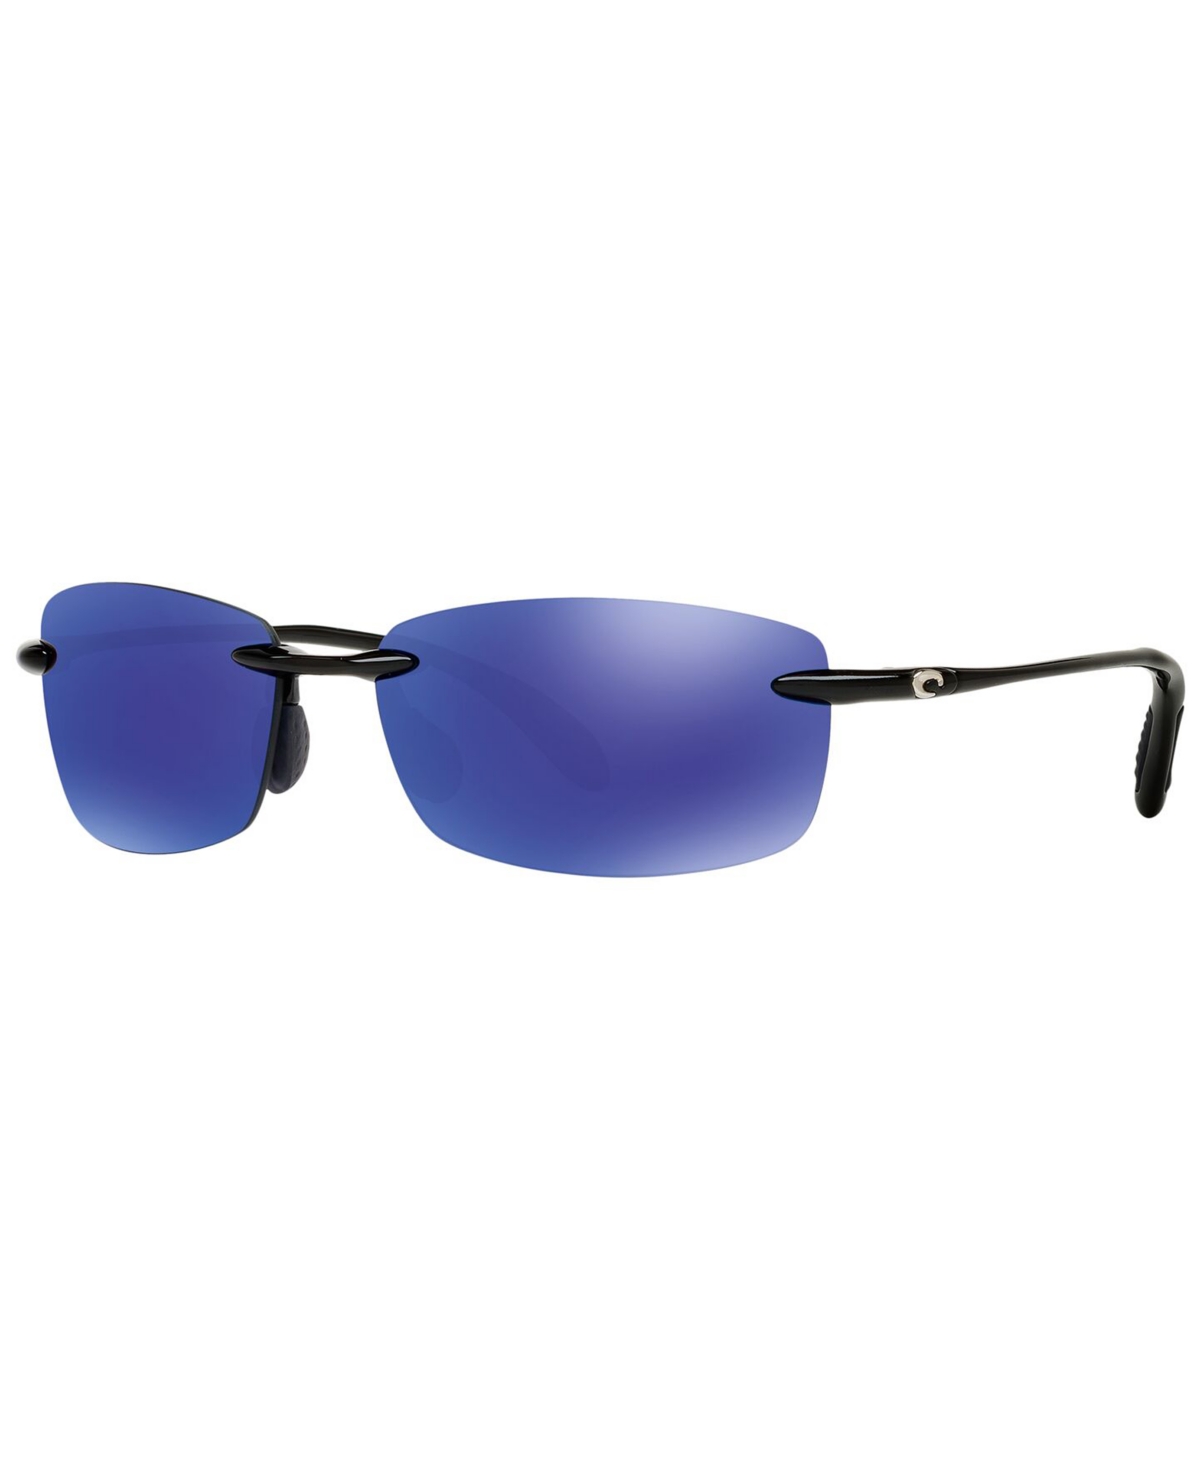 Costa Del Mar Unisex Polarized Sunglasses, 6s000121 In Black Shiny,blue Mirror